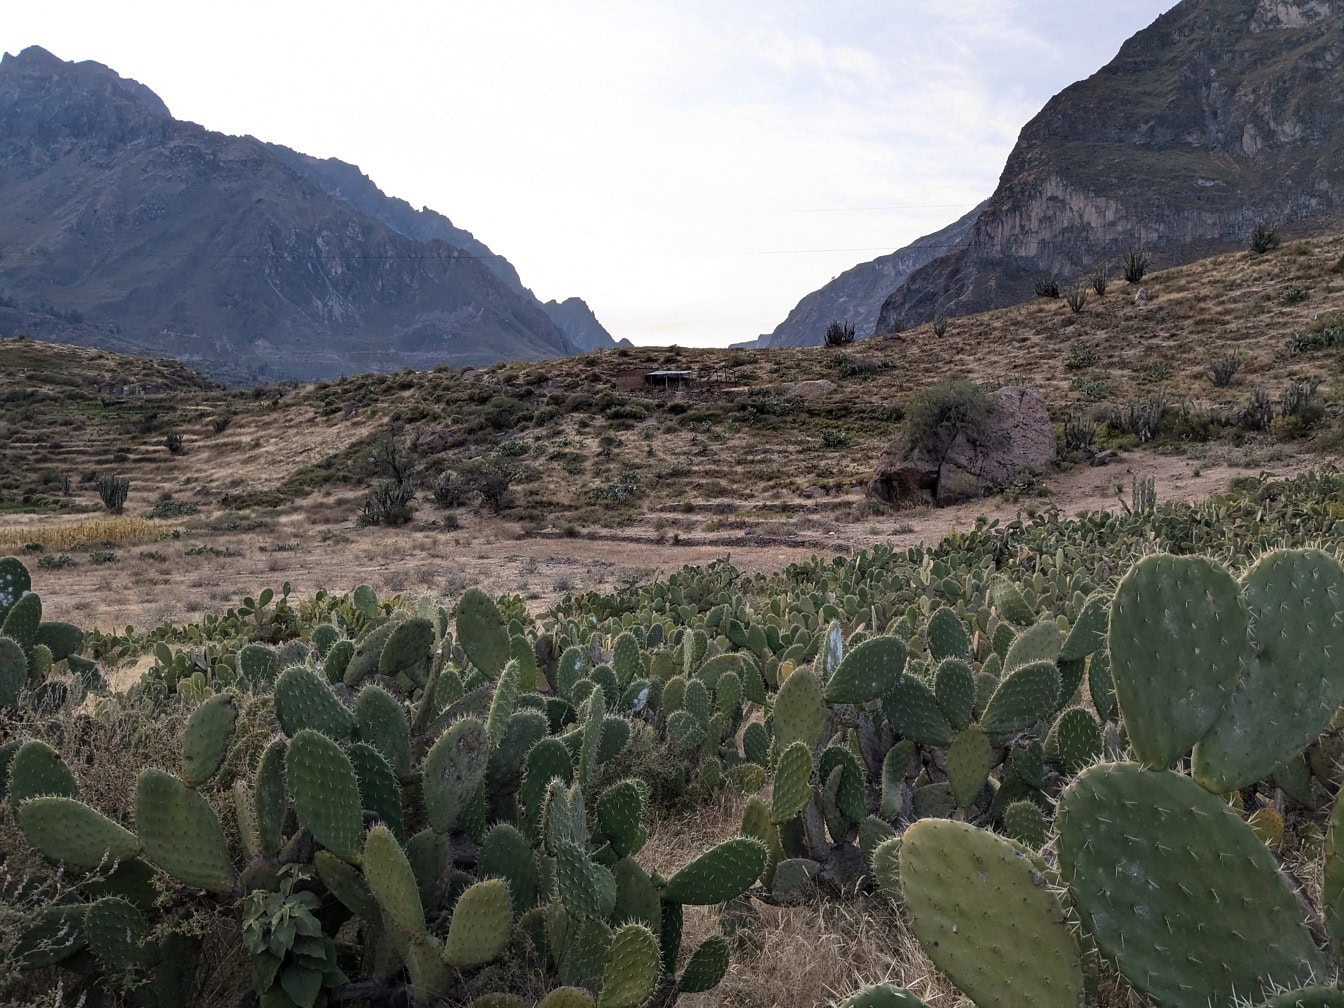 Paisaje de la naturaleza peruana con cactus en primer plano y con montañas al fondo